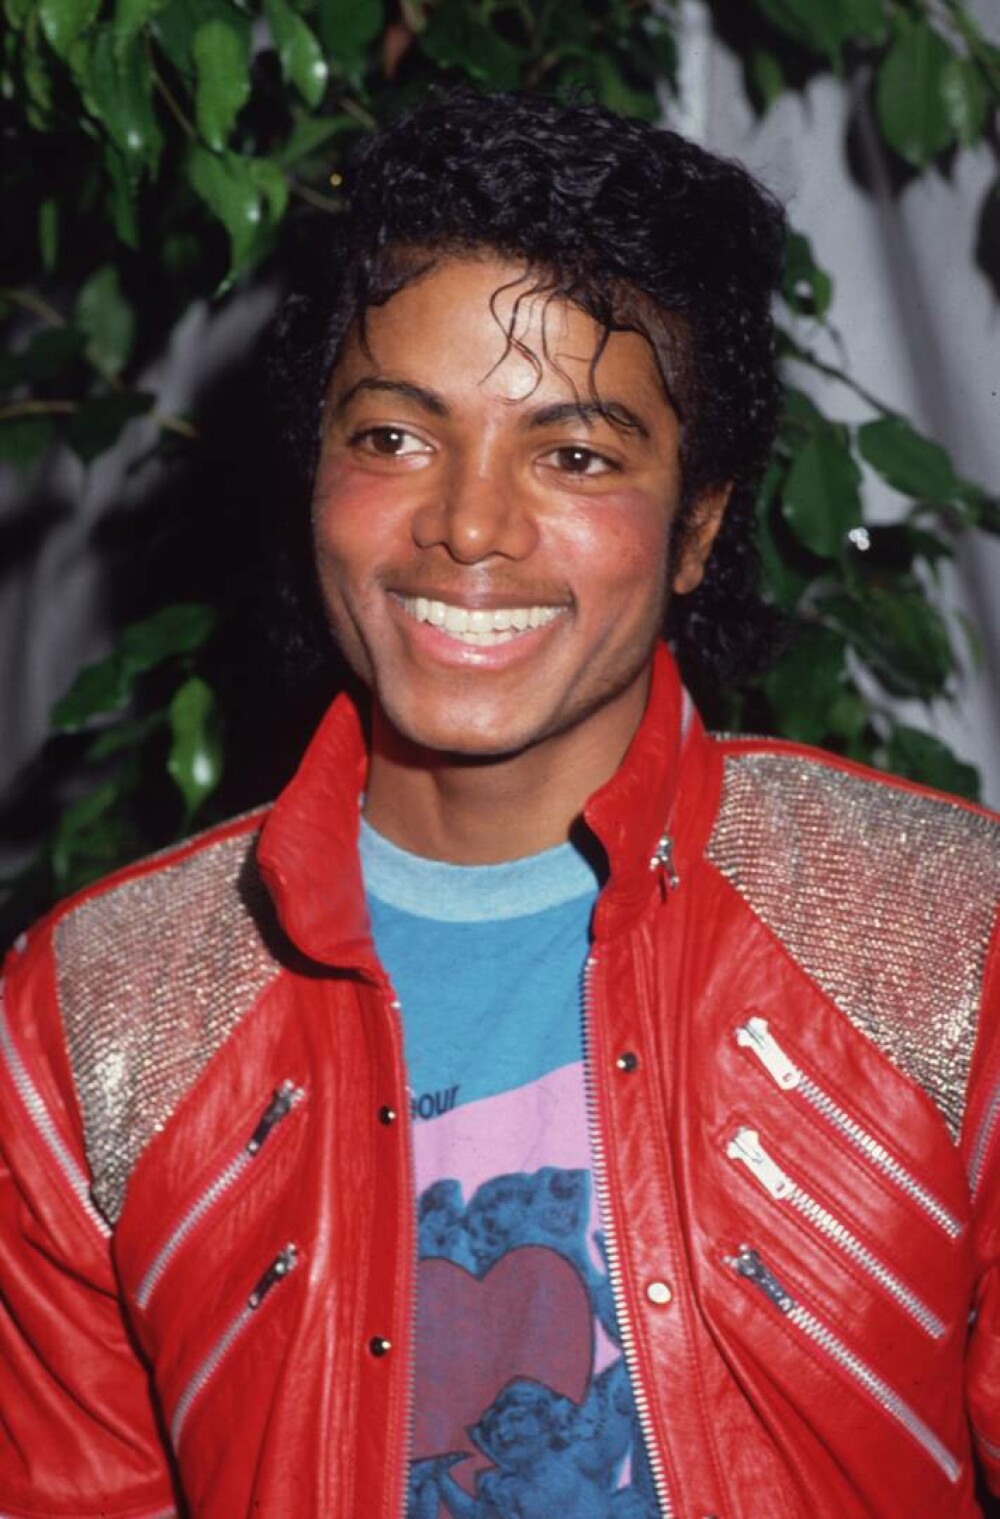 Imagini de colecție cu Michael Jackson. Regele muzicii pop ar fi împlinit 65 de ani | GALERIE FOTO - Imaginea 50